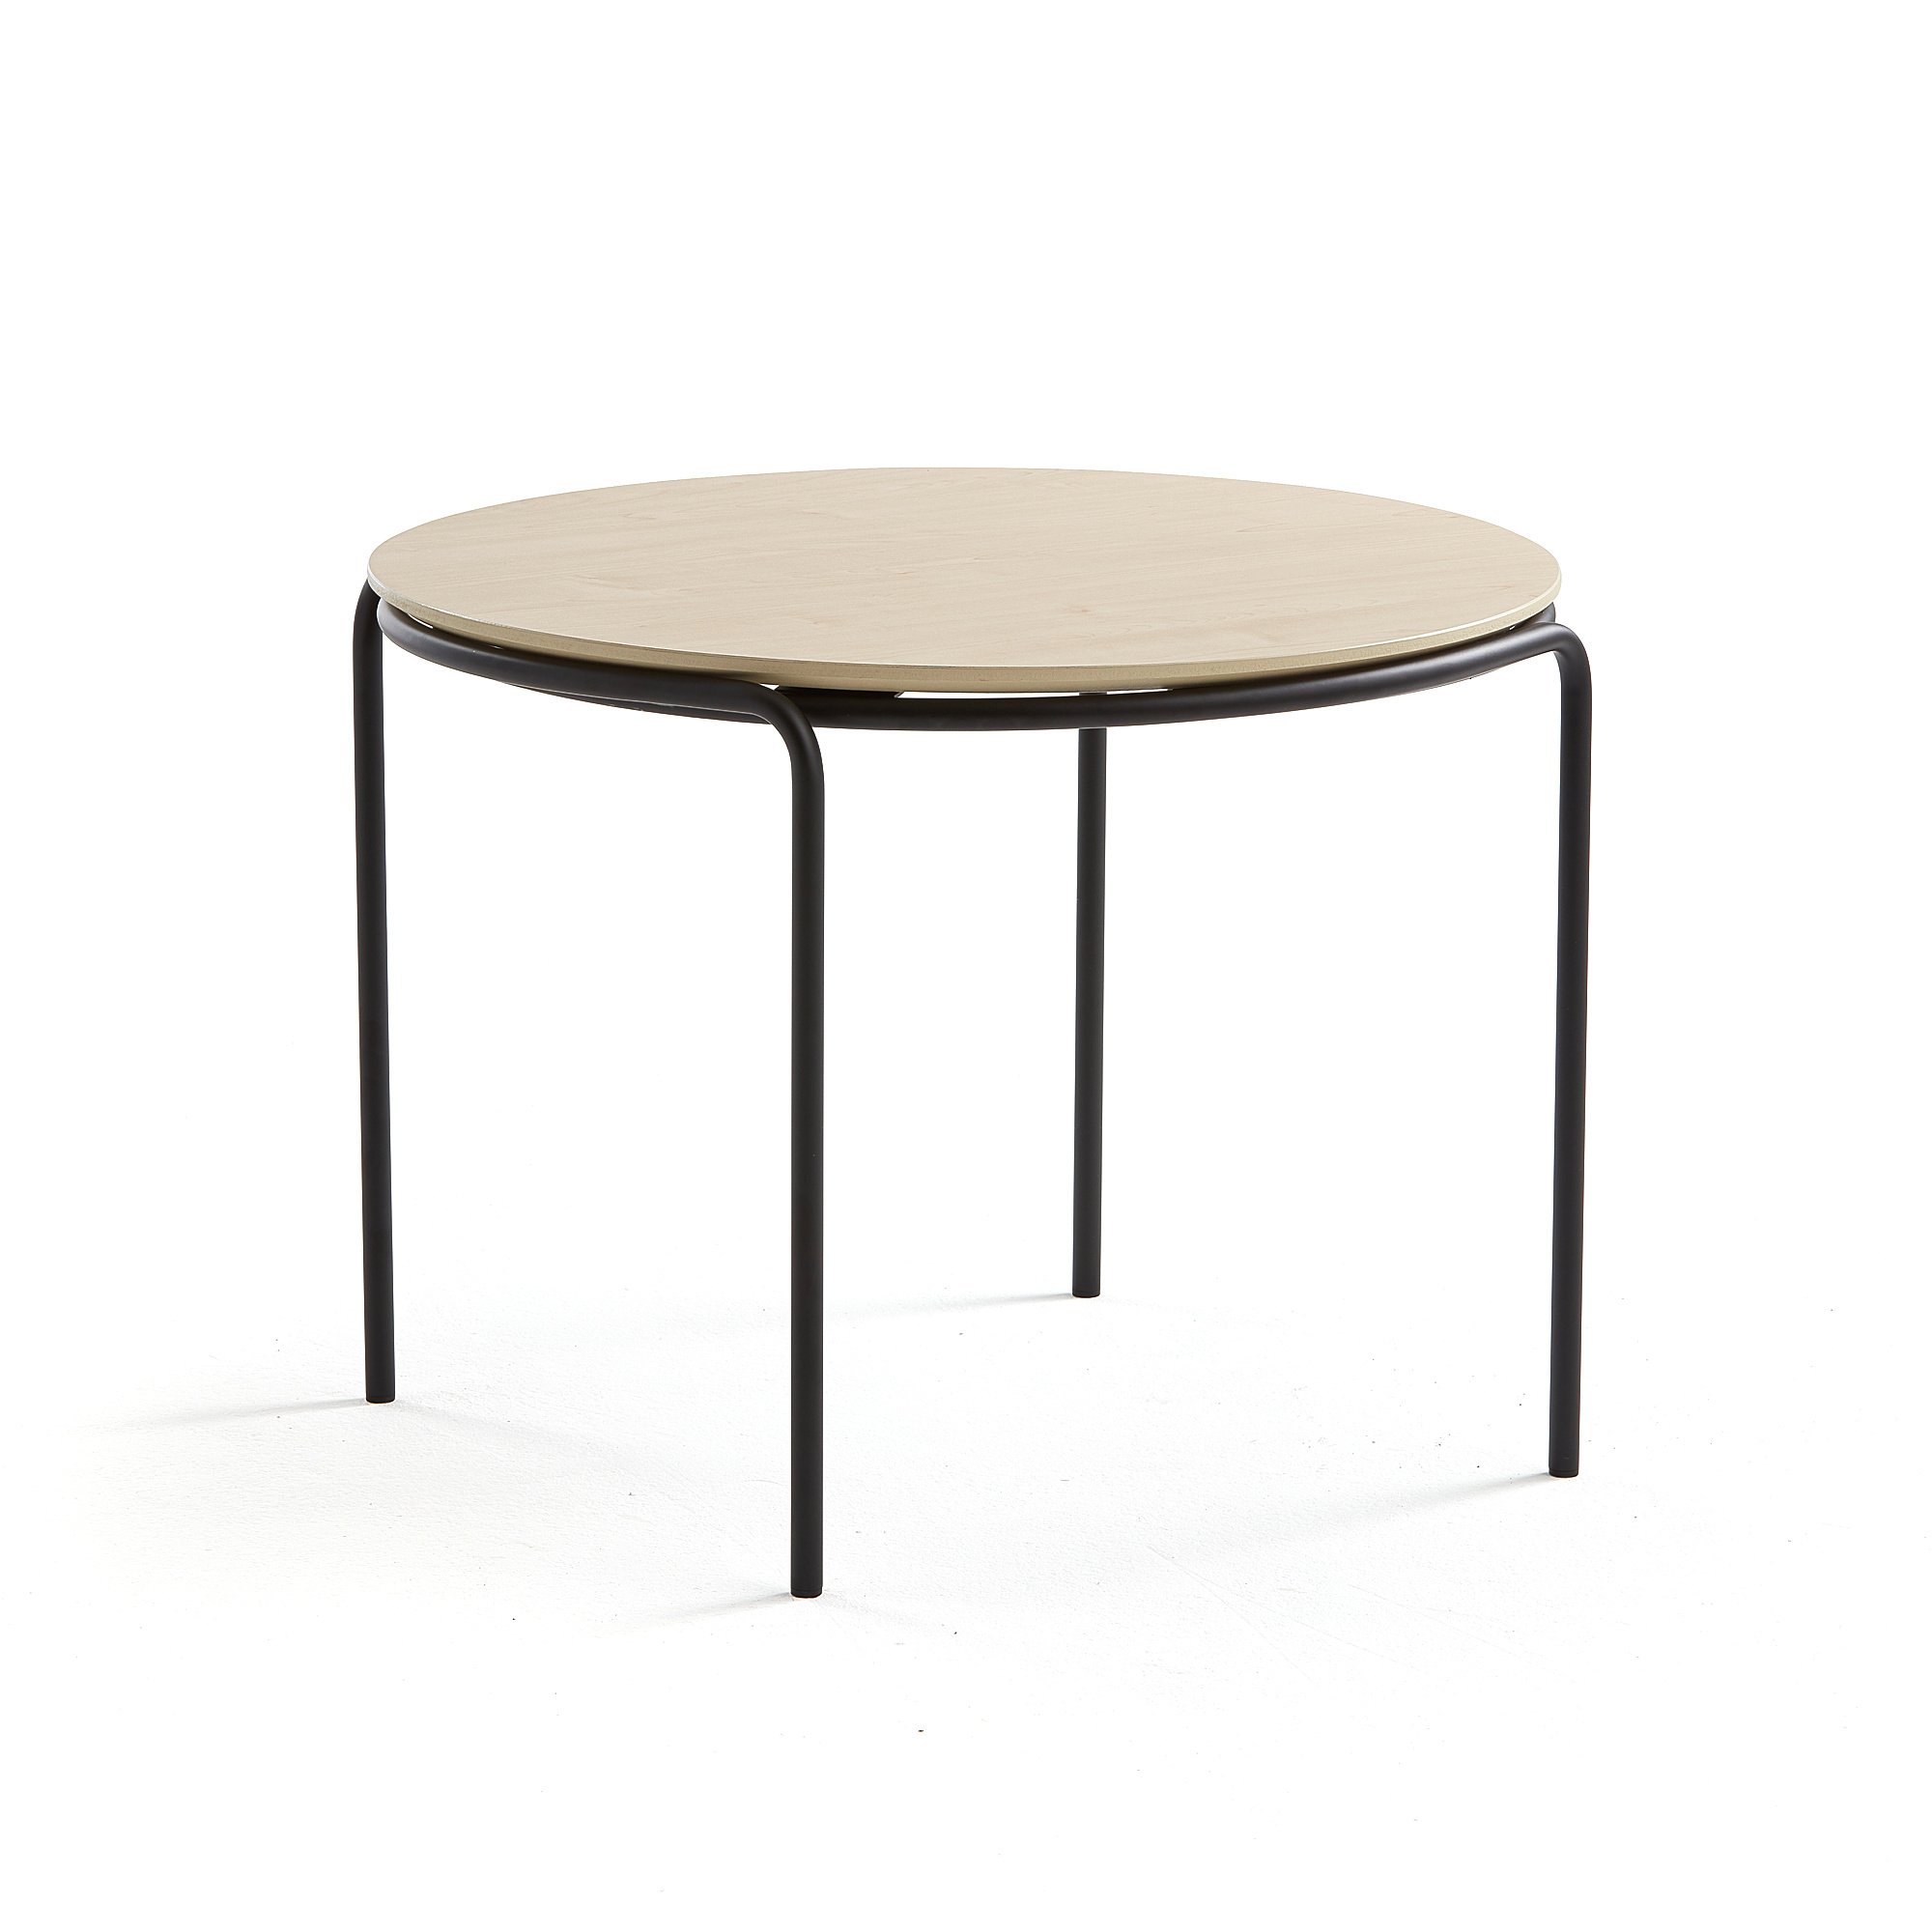 Konferenční stolek ASHLEY, Ø770 mm, výška 530 mm, černá, bříza